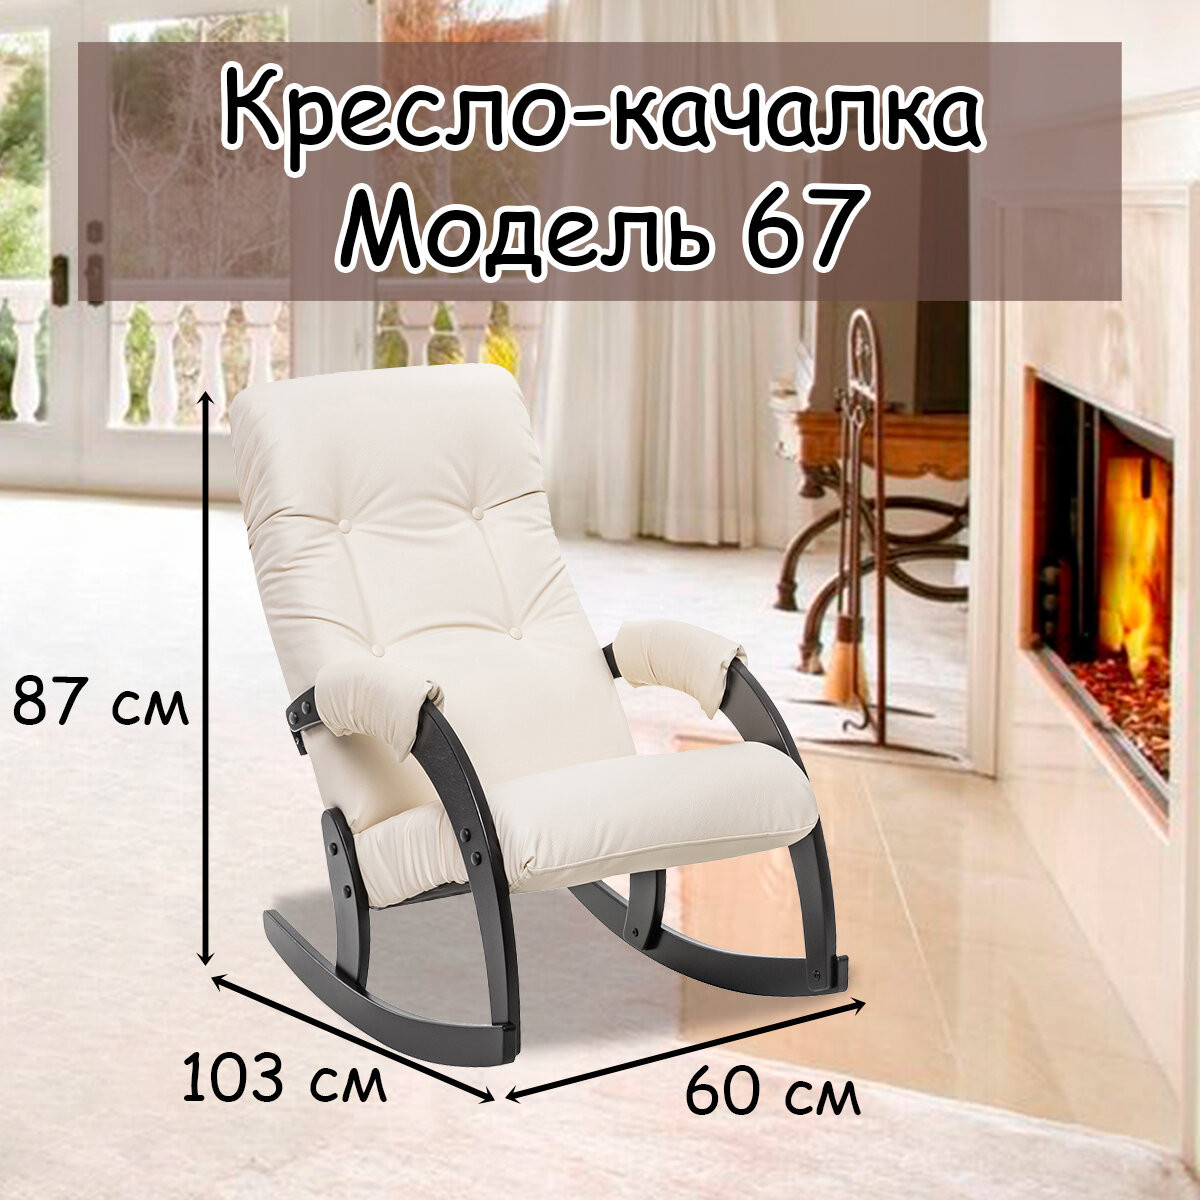 Кресло-качалка для взрослых 54х95х100 см, модель 67, экокожа, цвет: Dundi 112 (бежевый), каркас: Venge (черный)